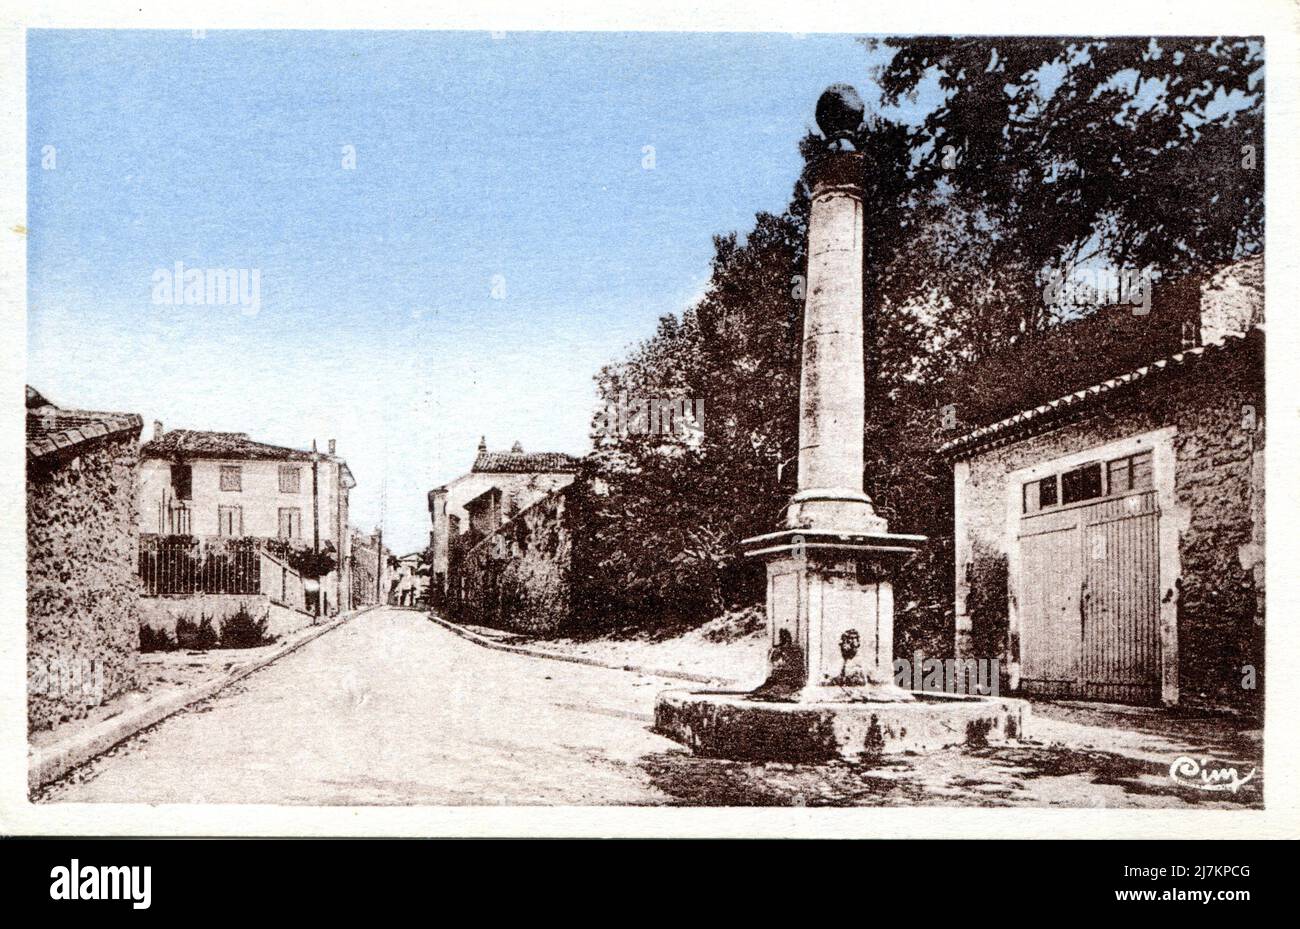 Mallemort Département: 13 - Bouches-du-Rhône région: Provence-Alpes-Côte d'Azur carte postale ancienne, fin 19th - début 20th siècle Banque D'Images